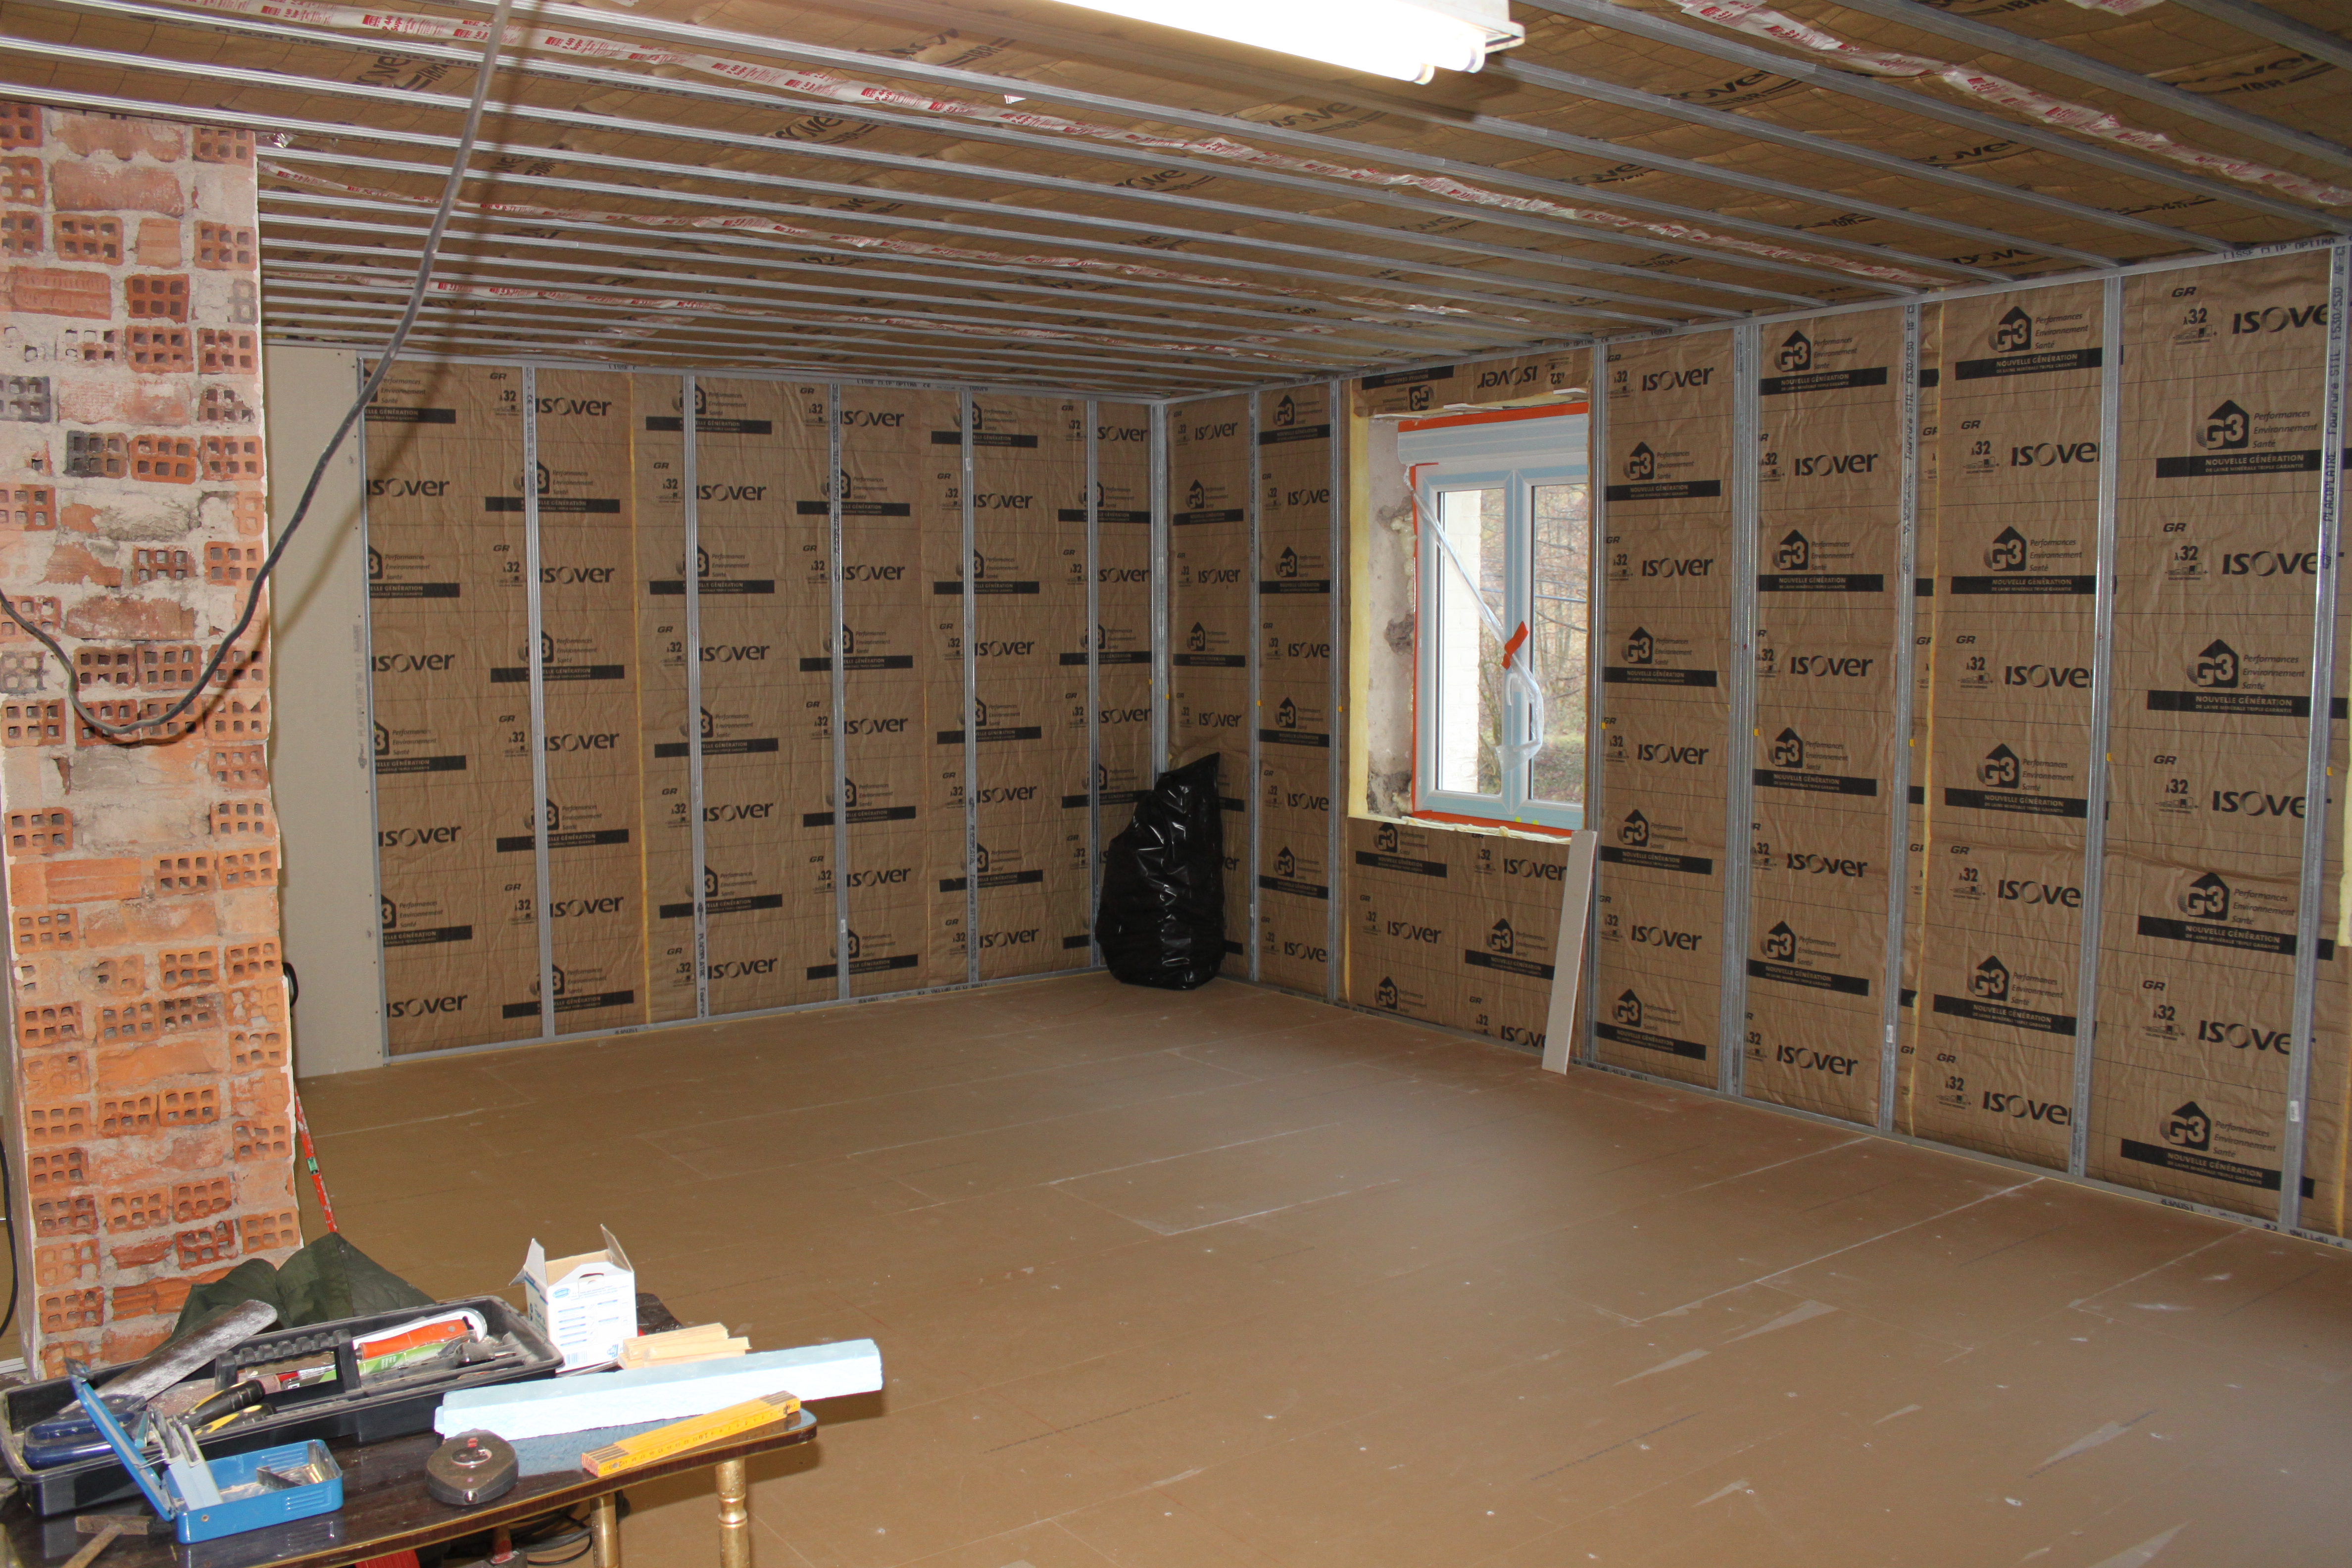 Configurateurs pour cloisons, plafonds et isolation toiture